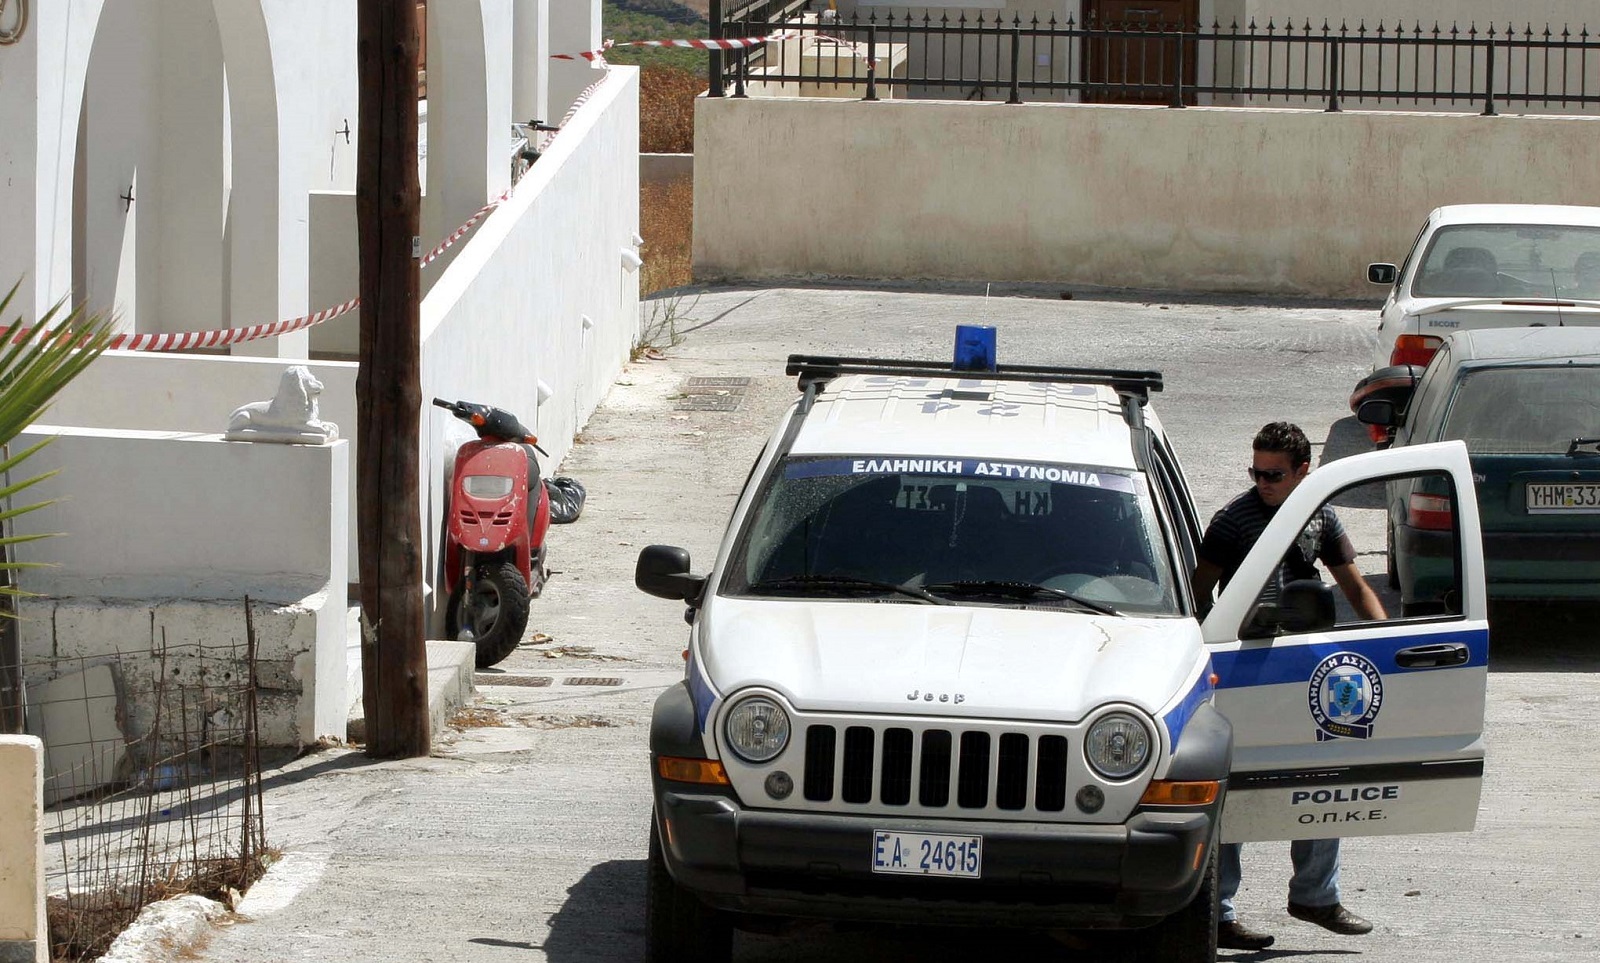 Σαντορίνη: Συνελήφθη διακινητής ναρκωτικών που επιχείρησε να δωροδοκήσει αστυνομικούς